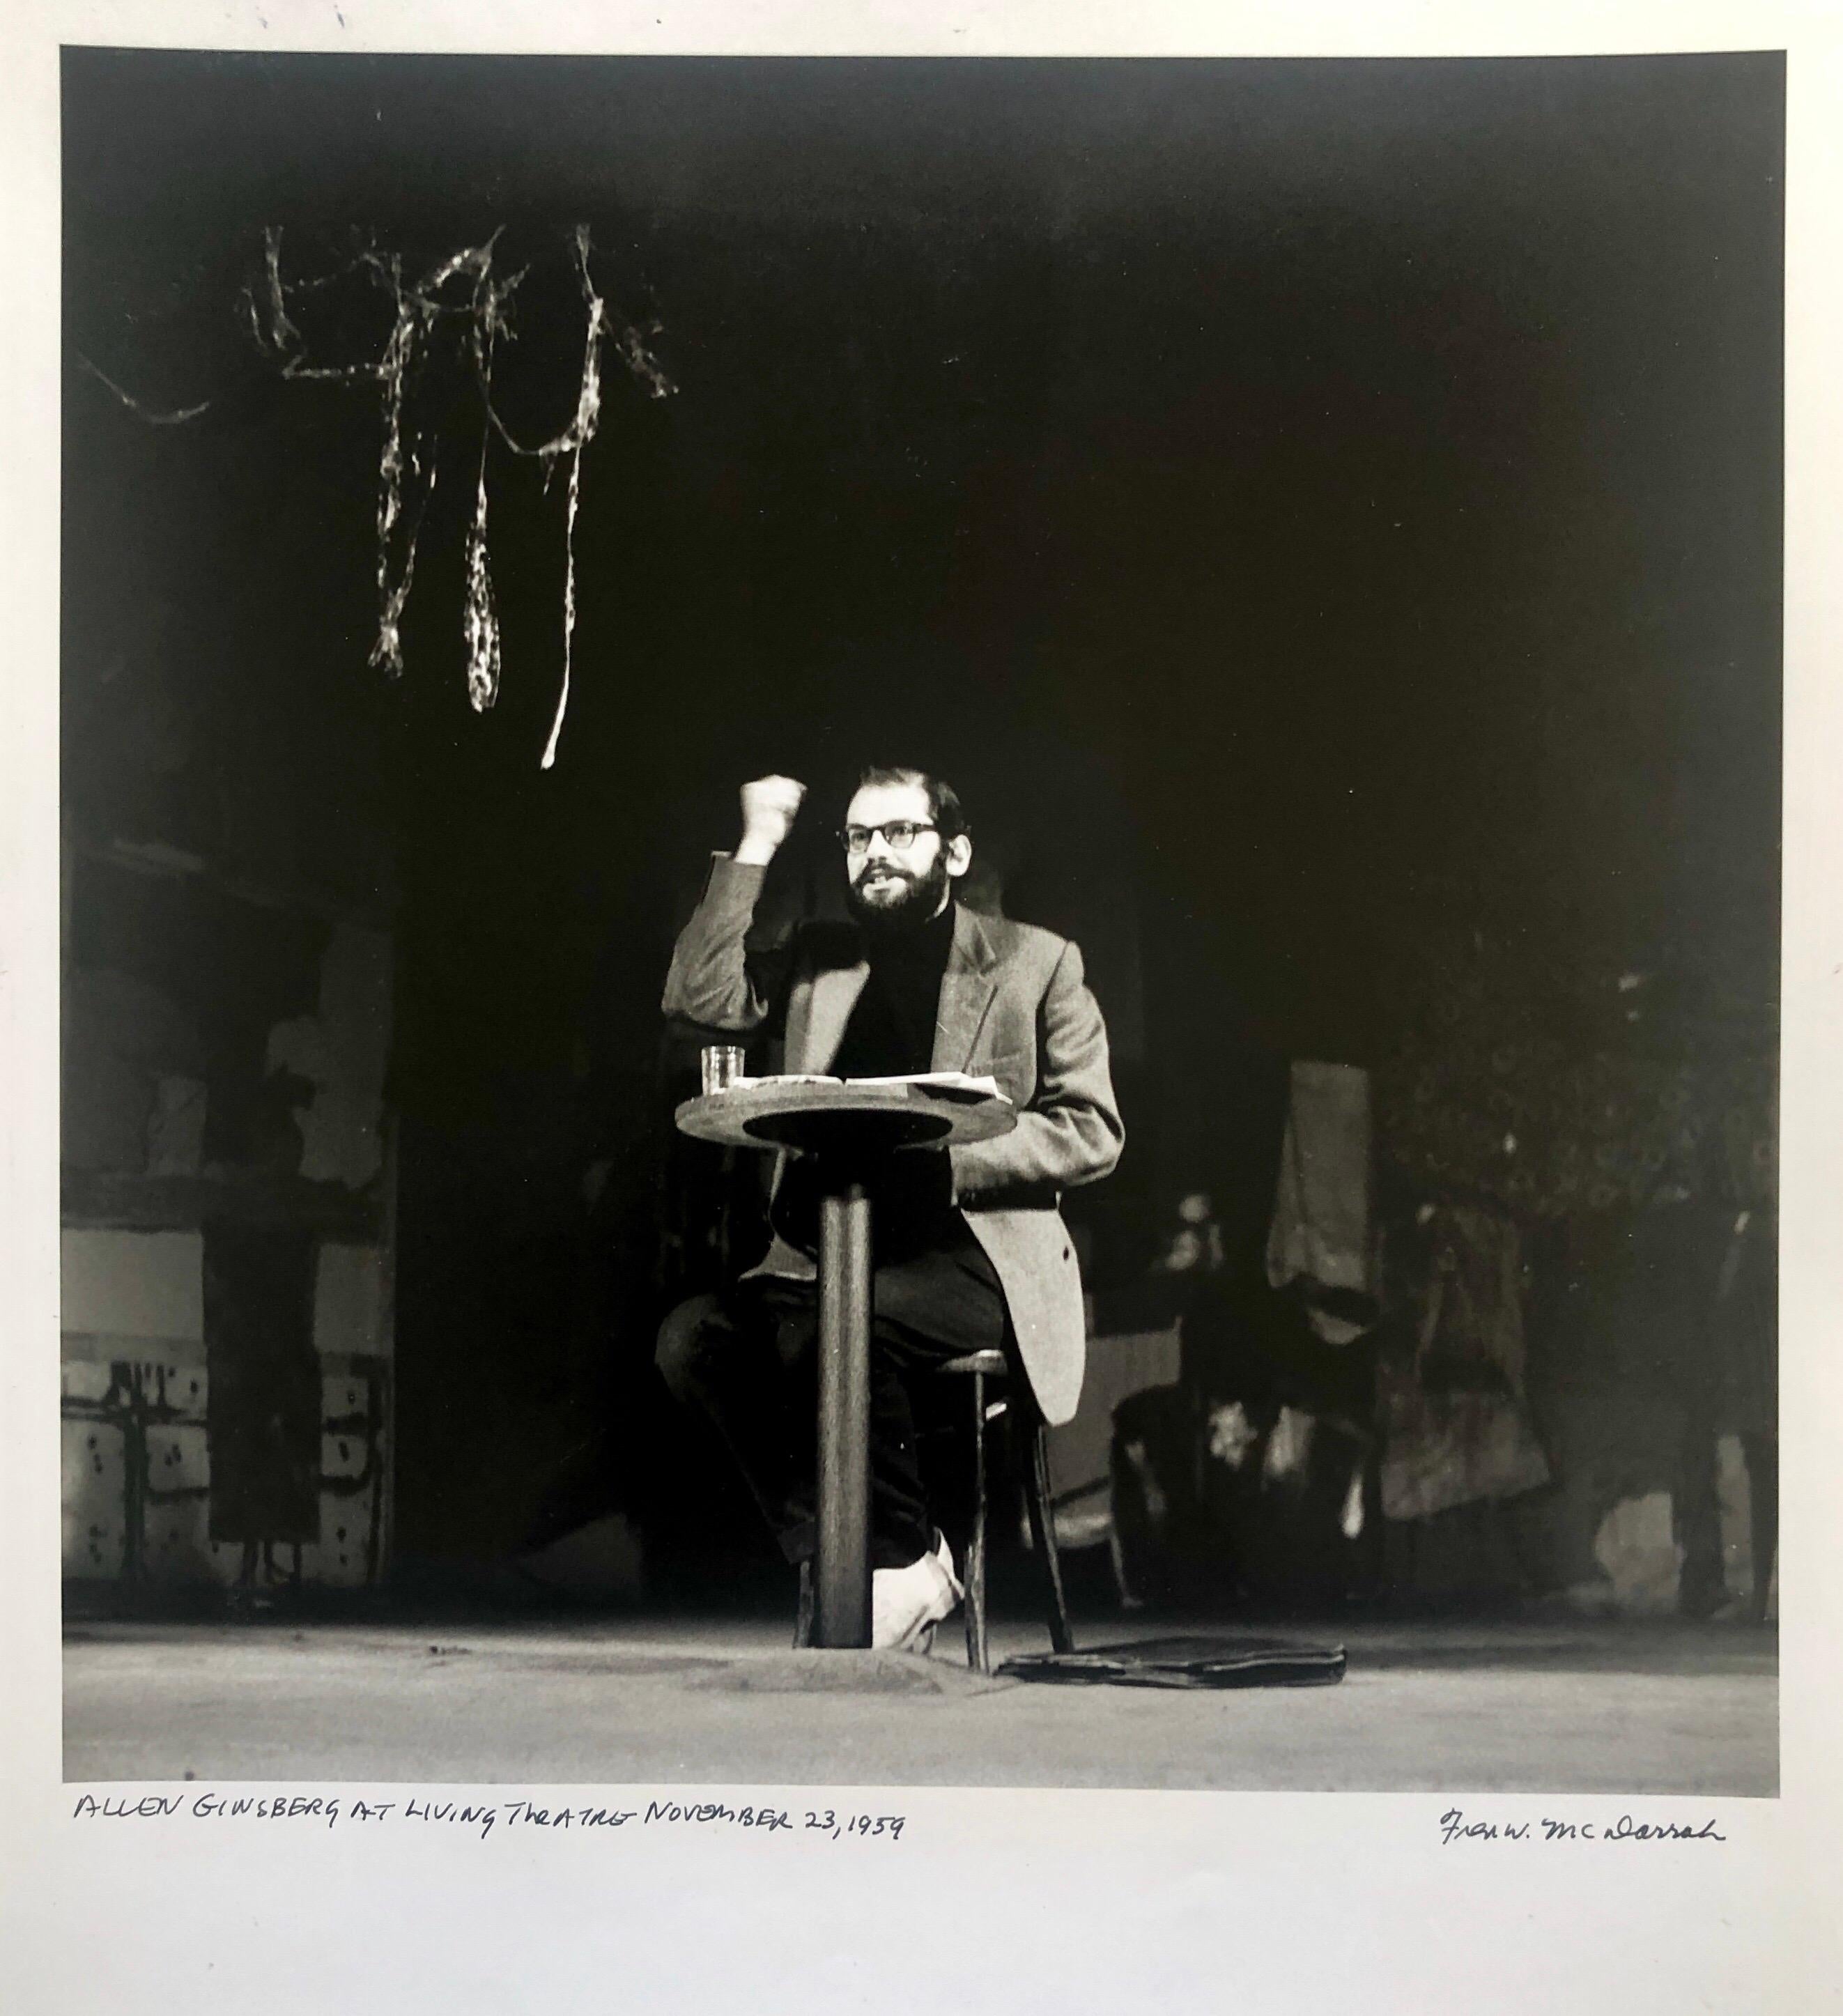 Figurative Photograph Fred McDarrah - Imprimé vintage gélatino-argentique signé du poète Allen Ginsberg Howl Photo